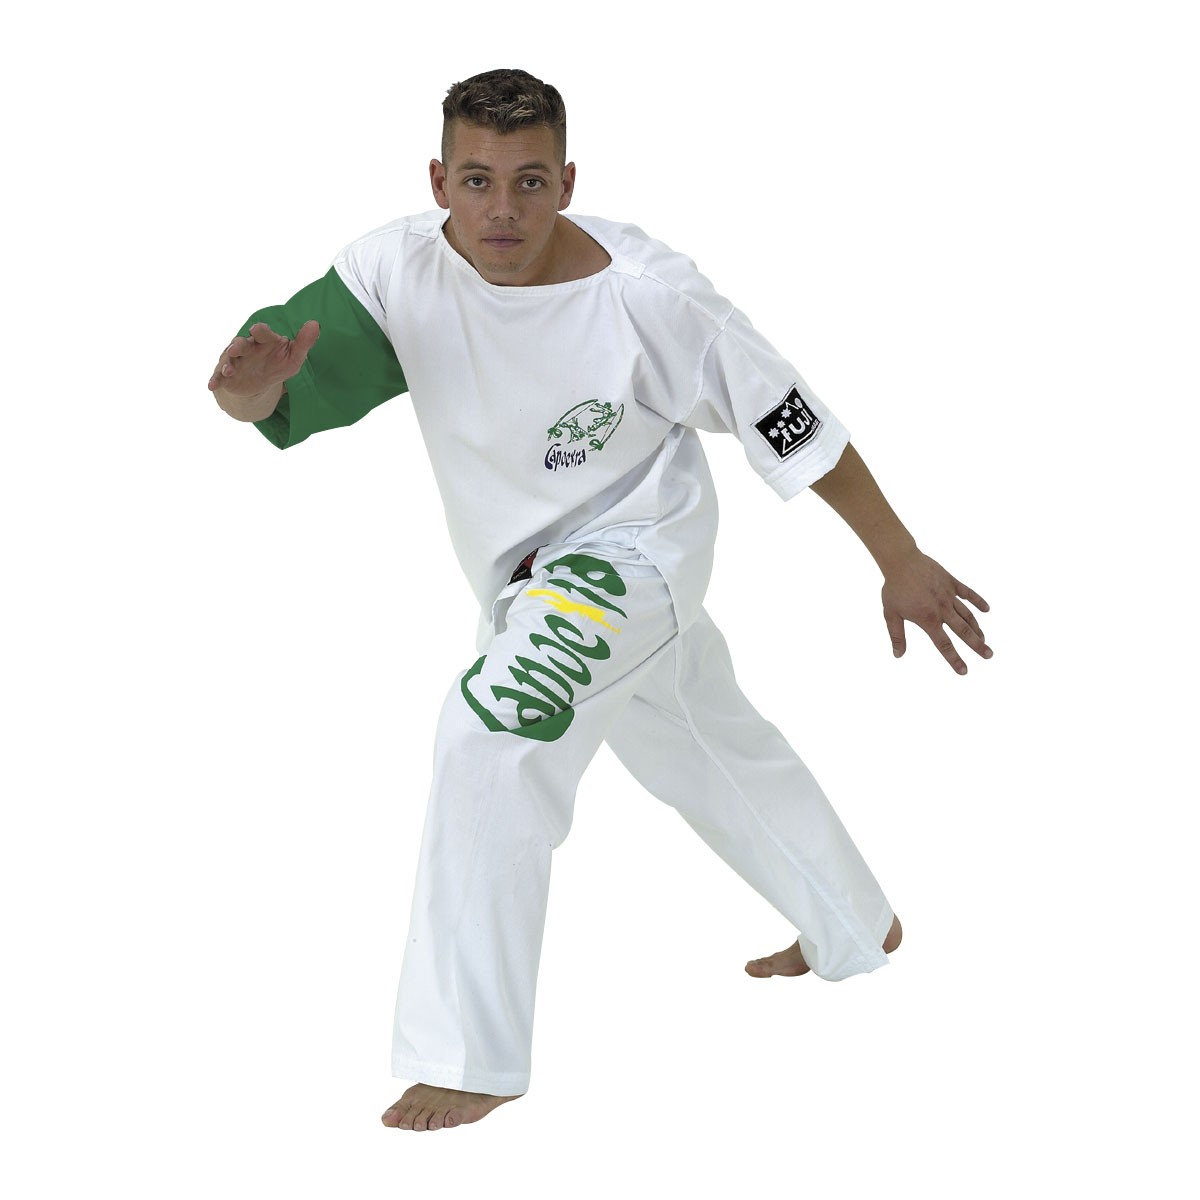 Auténticos Pantalones Capoeira De Brasil De Los Artes Marciales De Los Hombres Blanca 